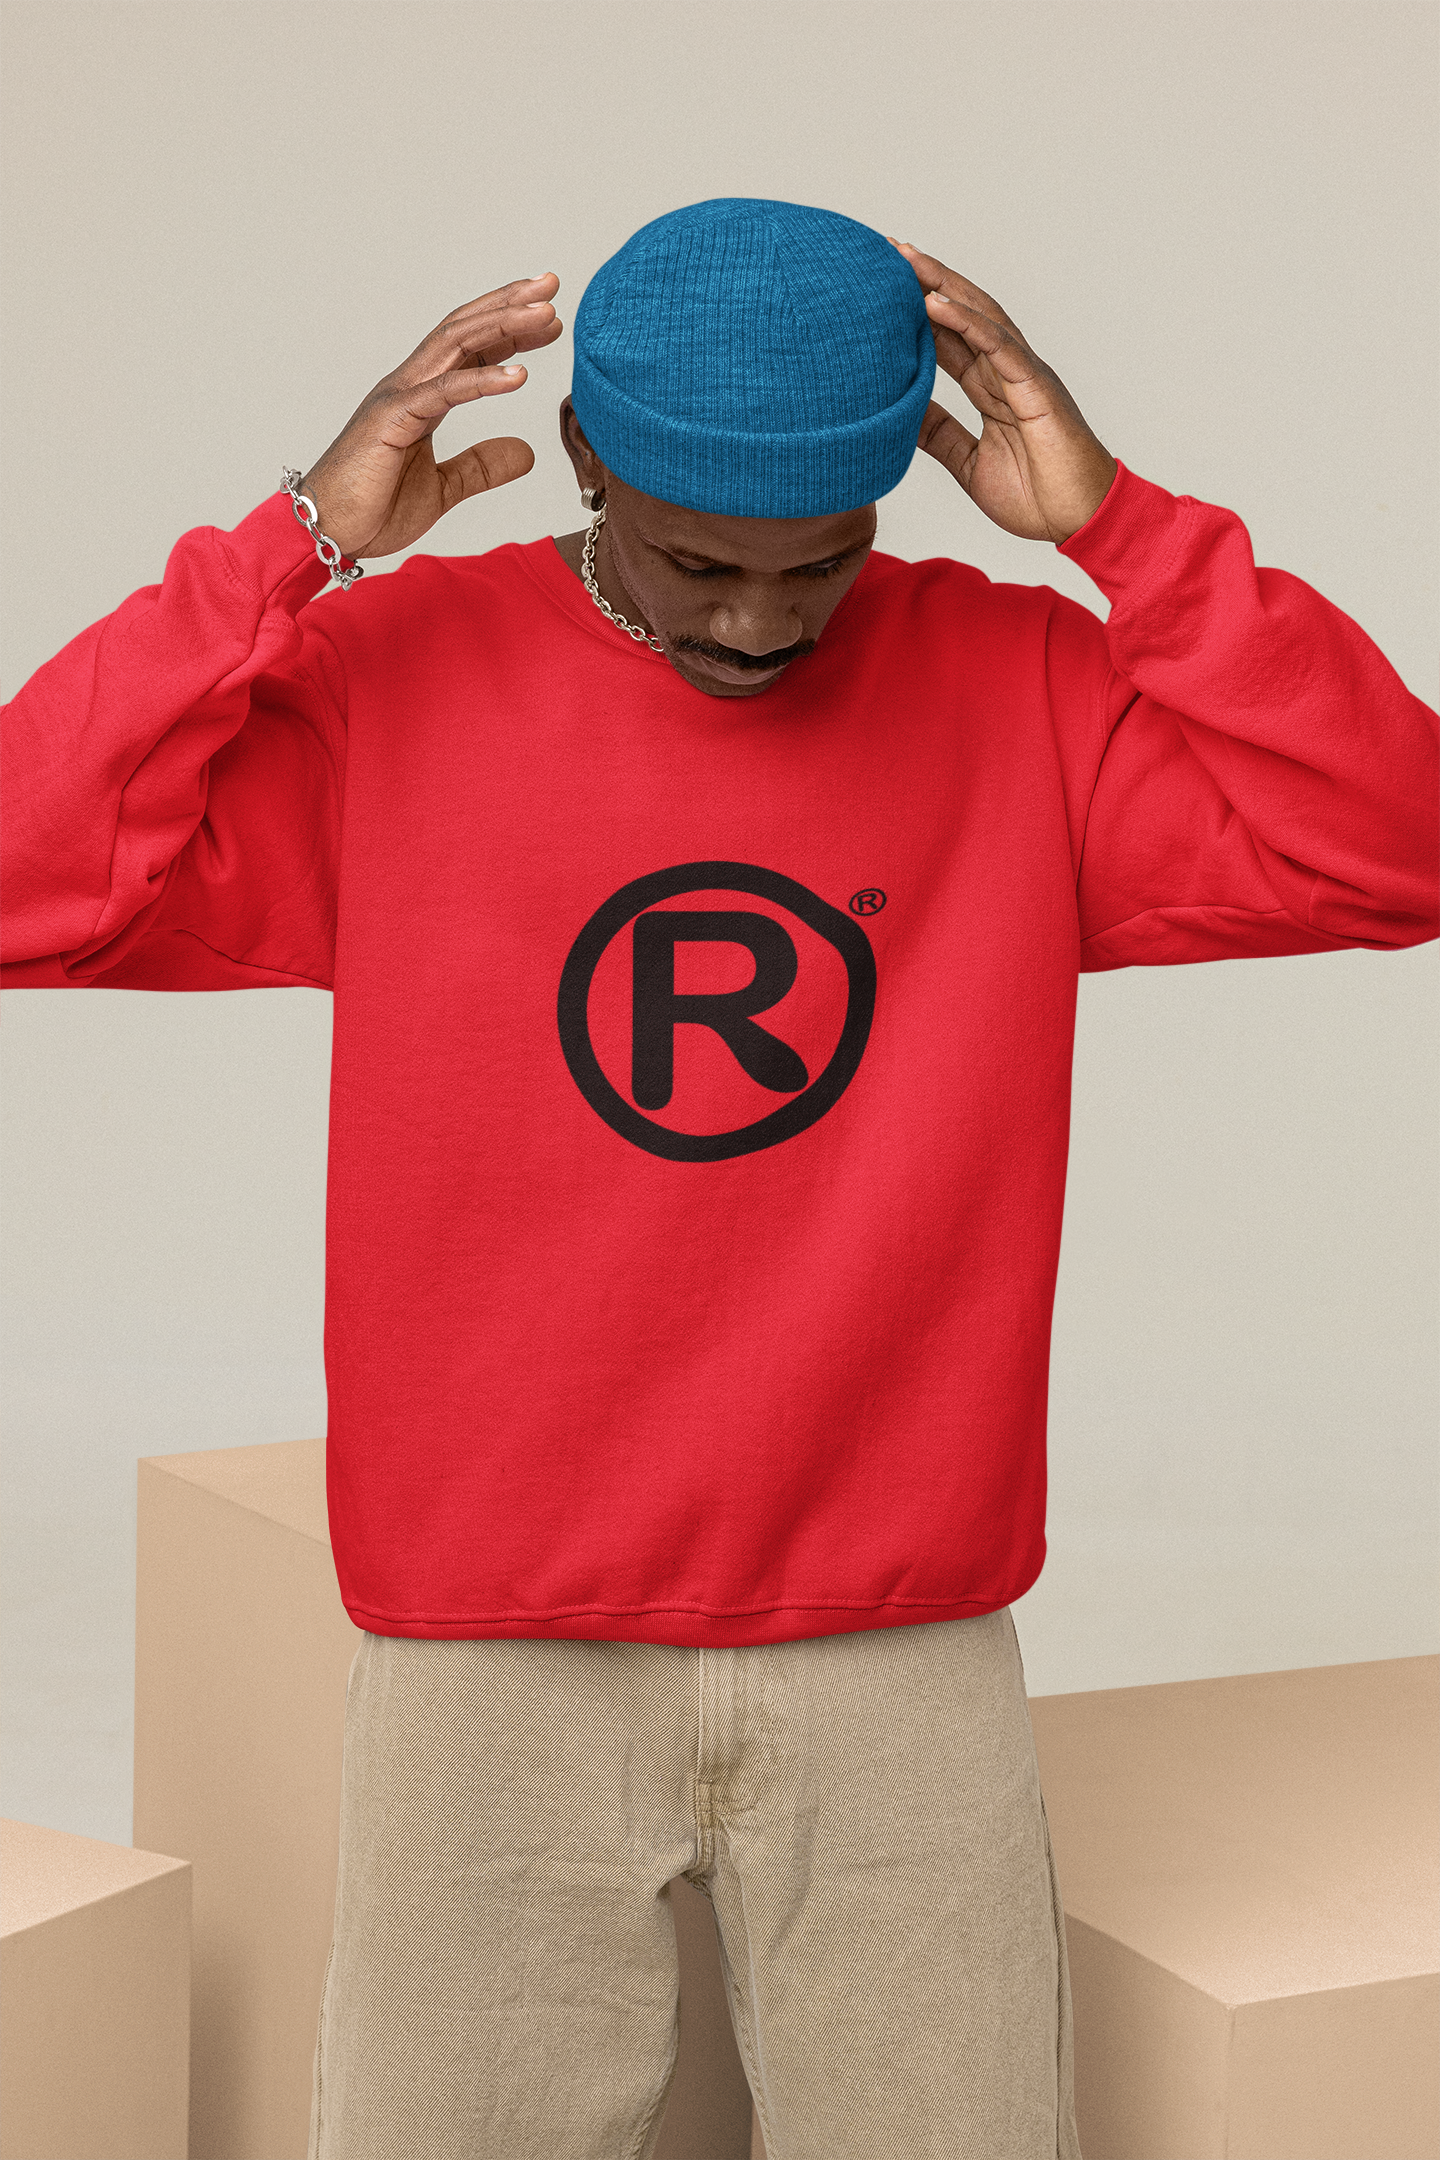 R Sweater Men/Unisex